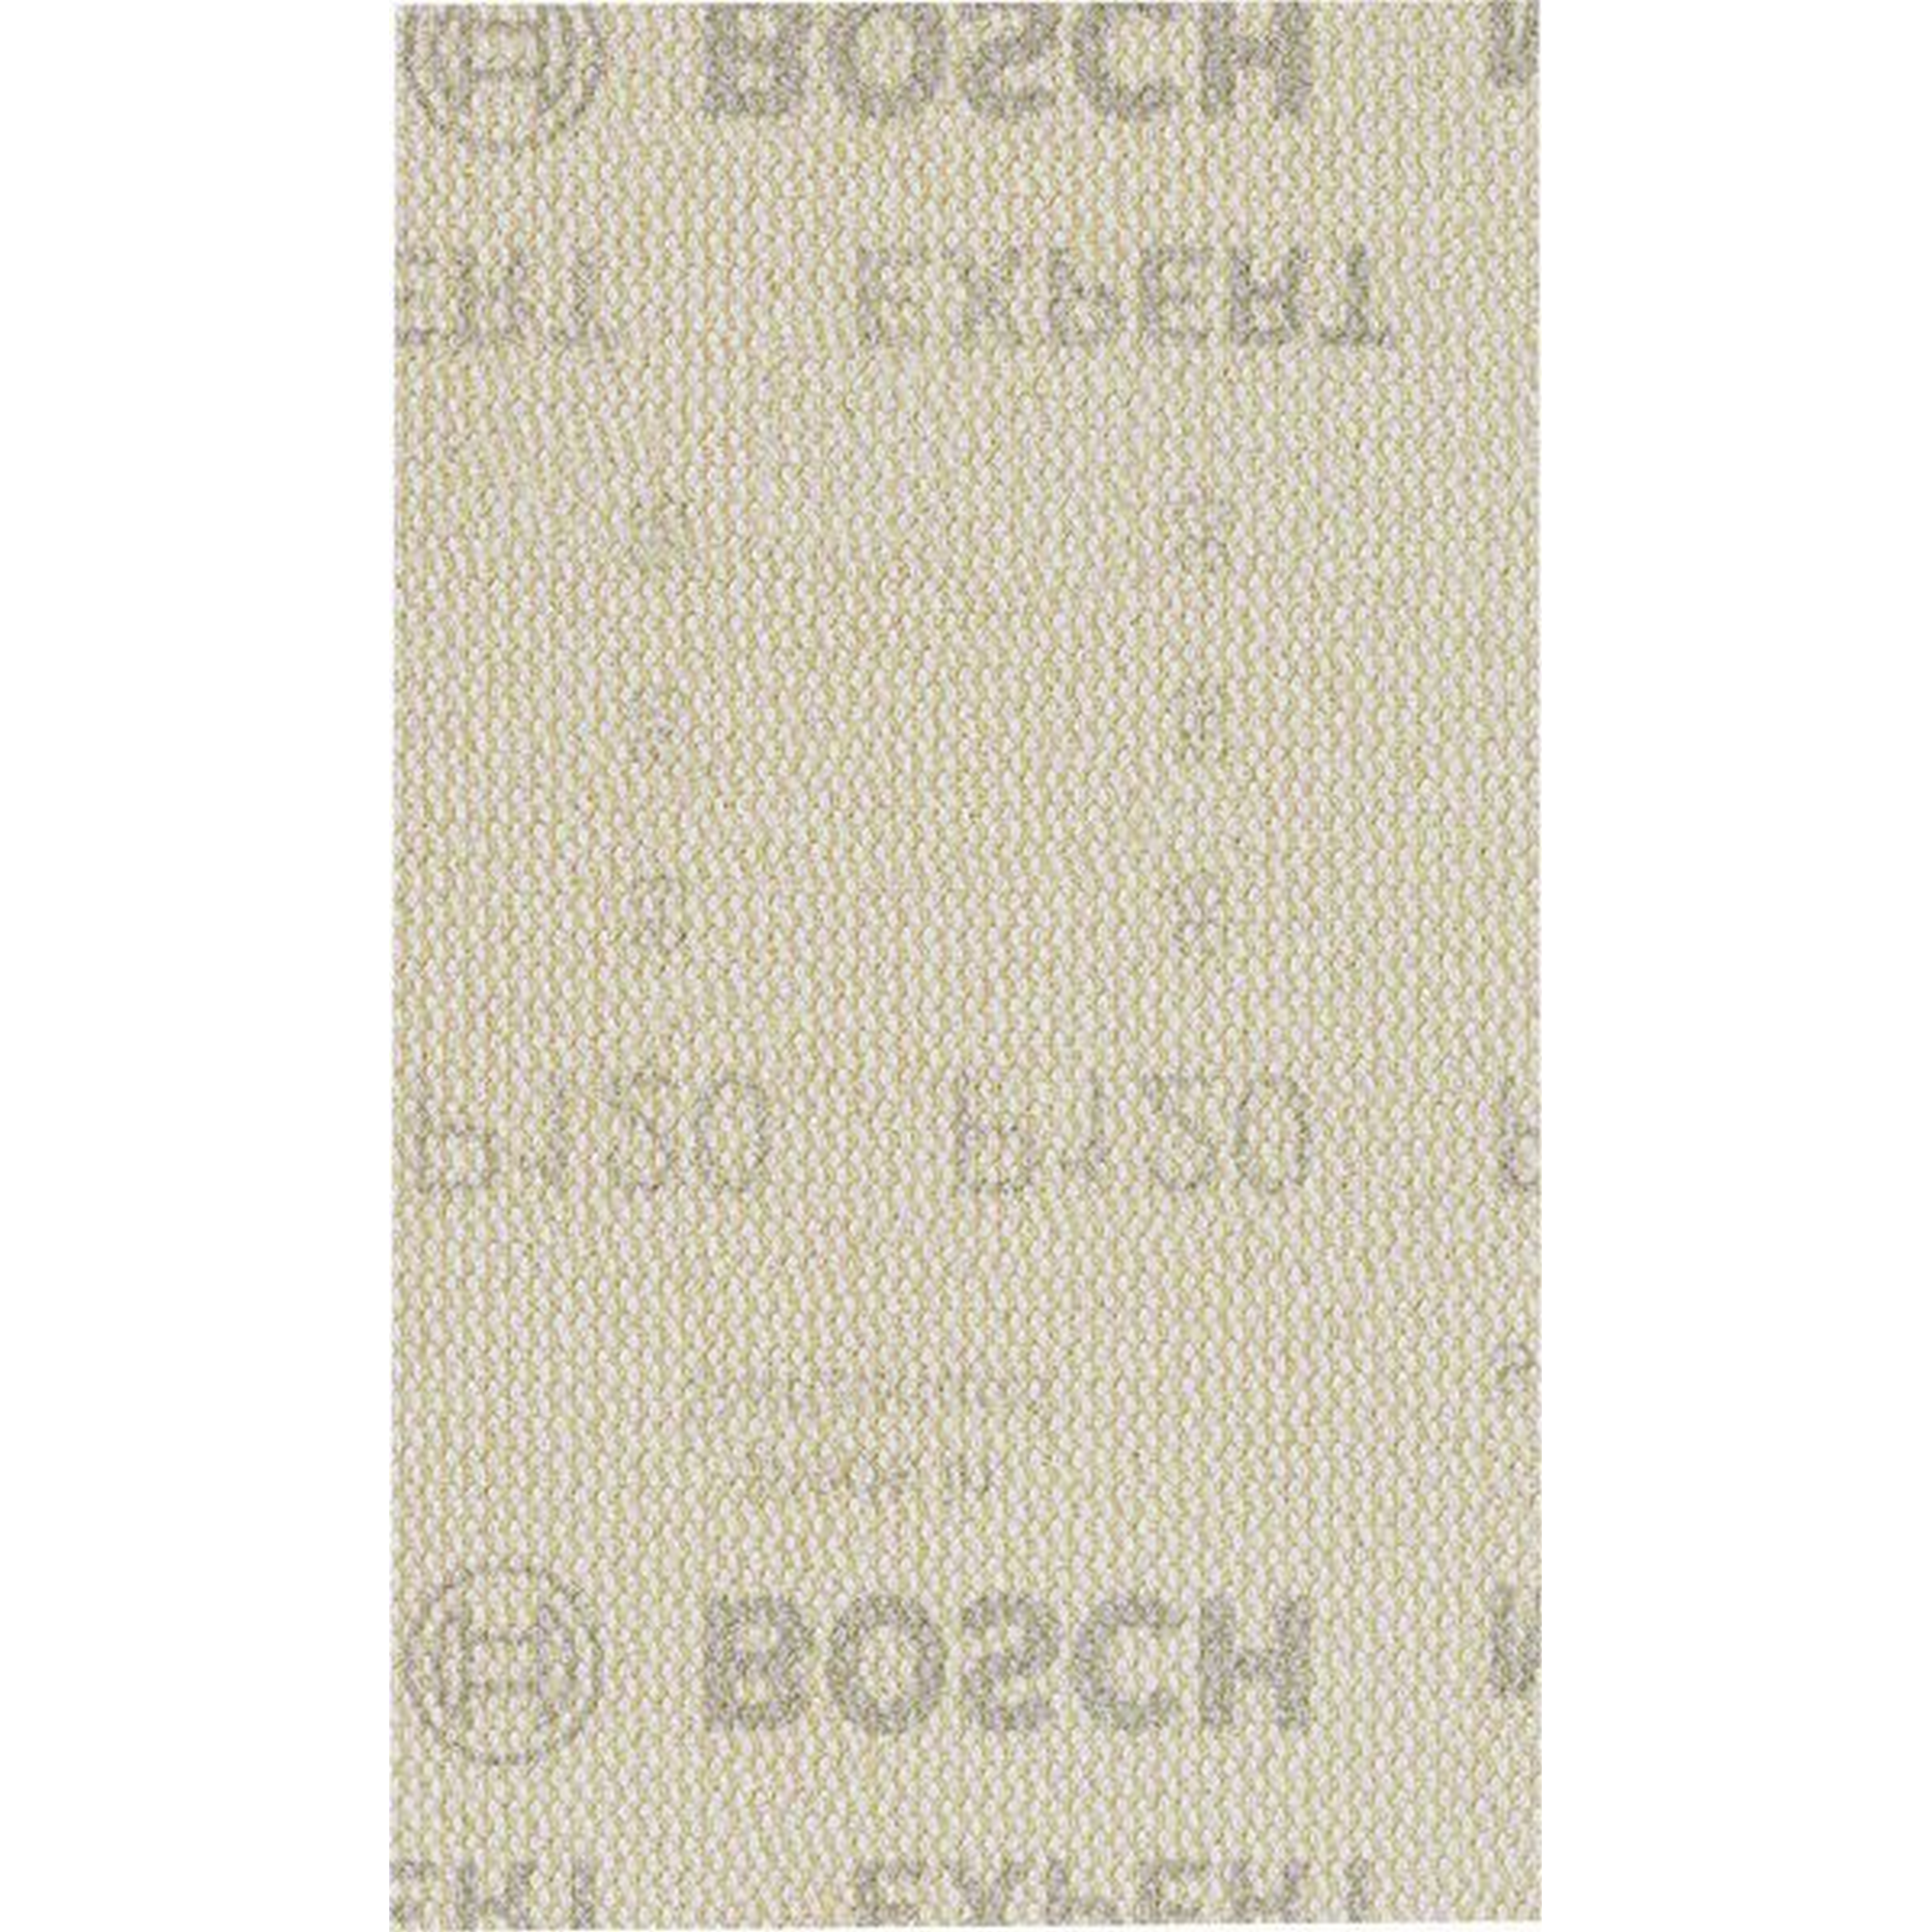 Exzenter-Netzschleifblatt 'Expert M480' 80 x 133 mm Körnung 120, 10 Stück + product picture